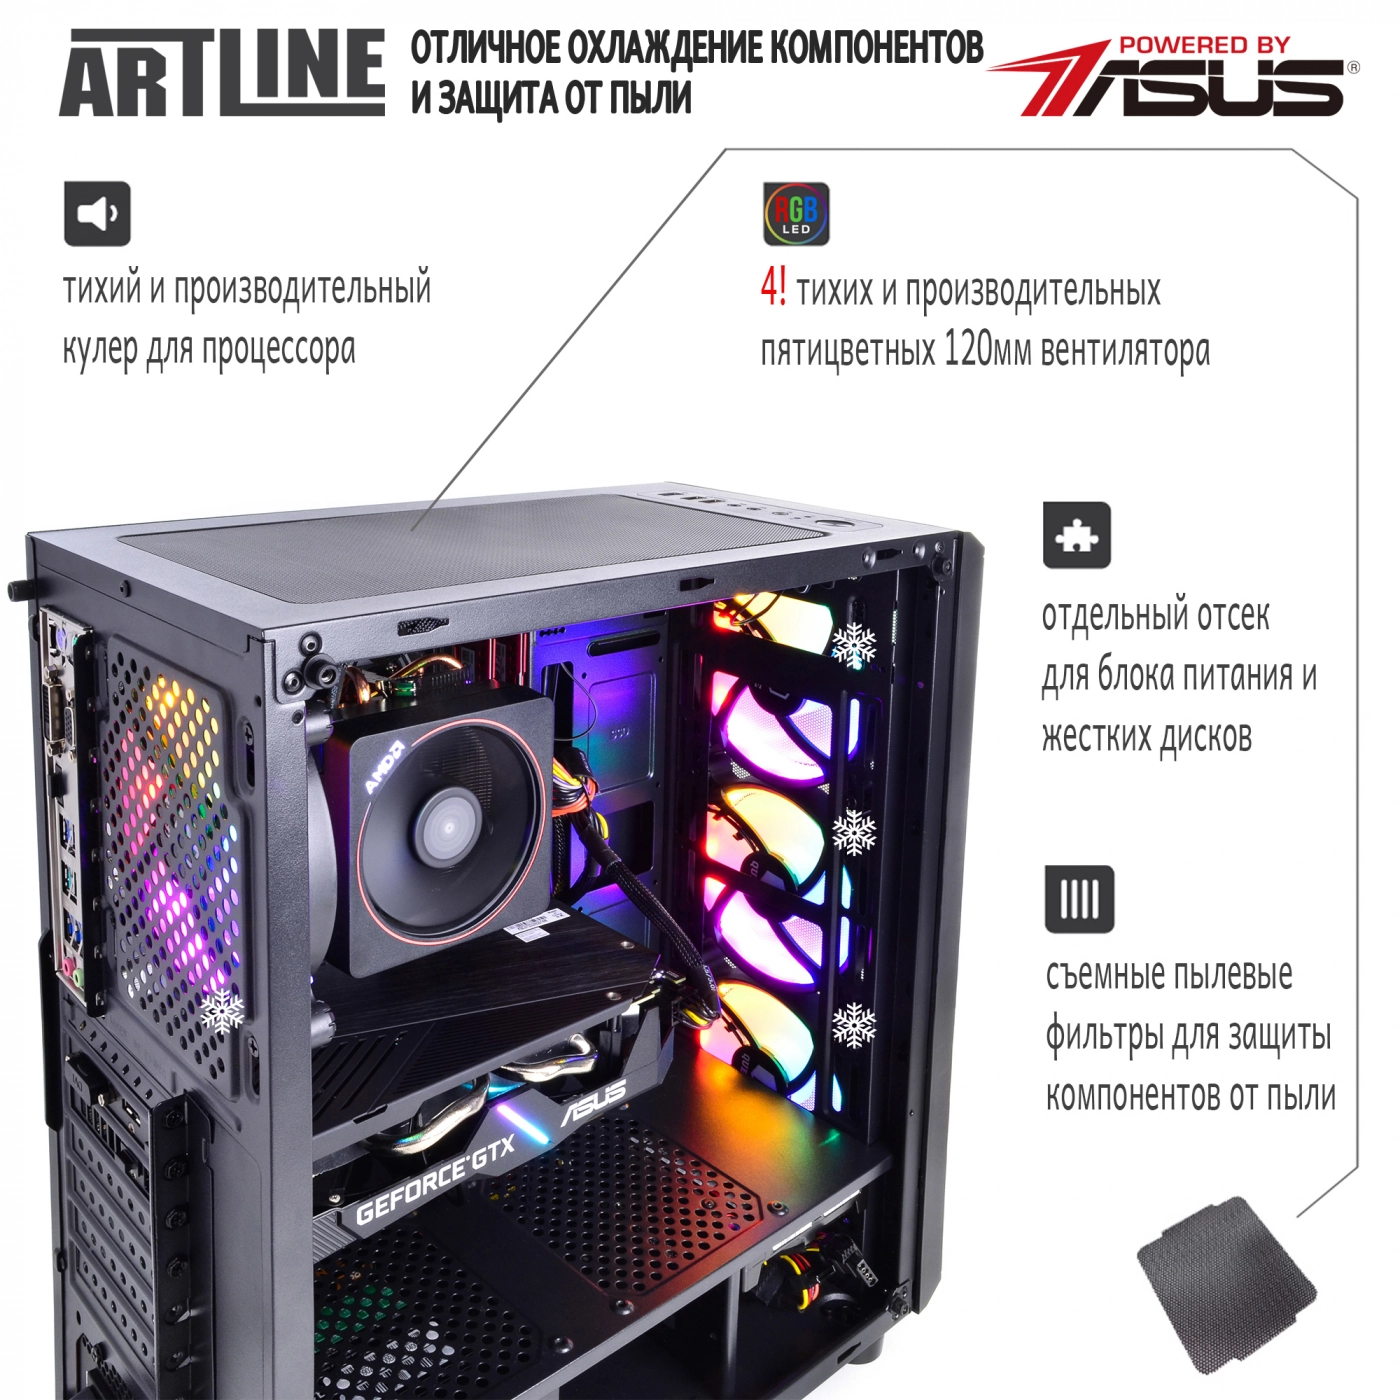 Купить Компьютер ARTLINE Gaming X48v06 - фото 3